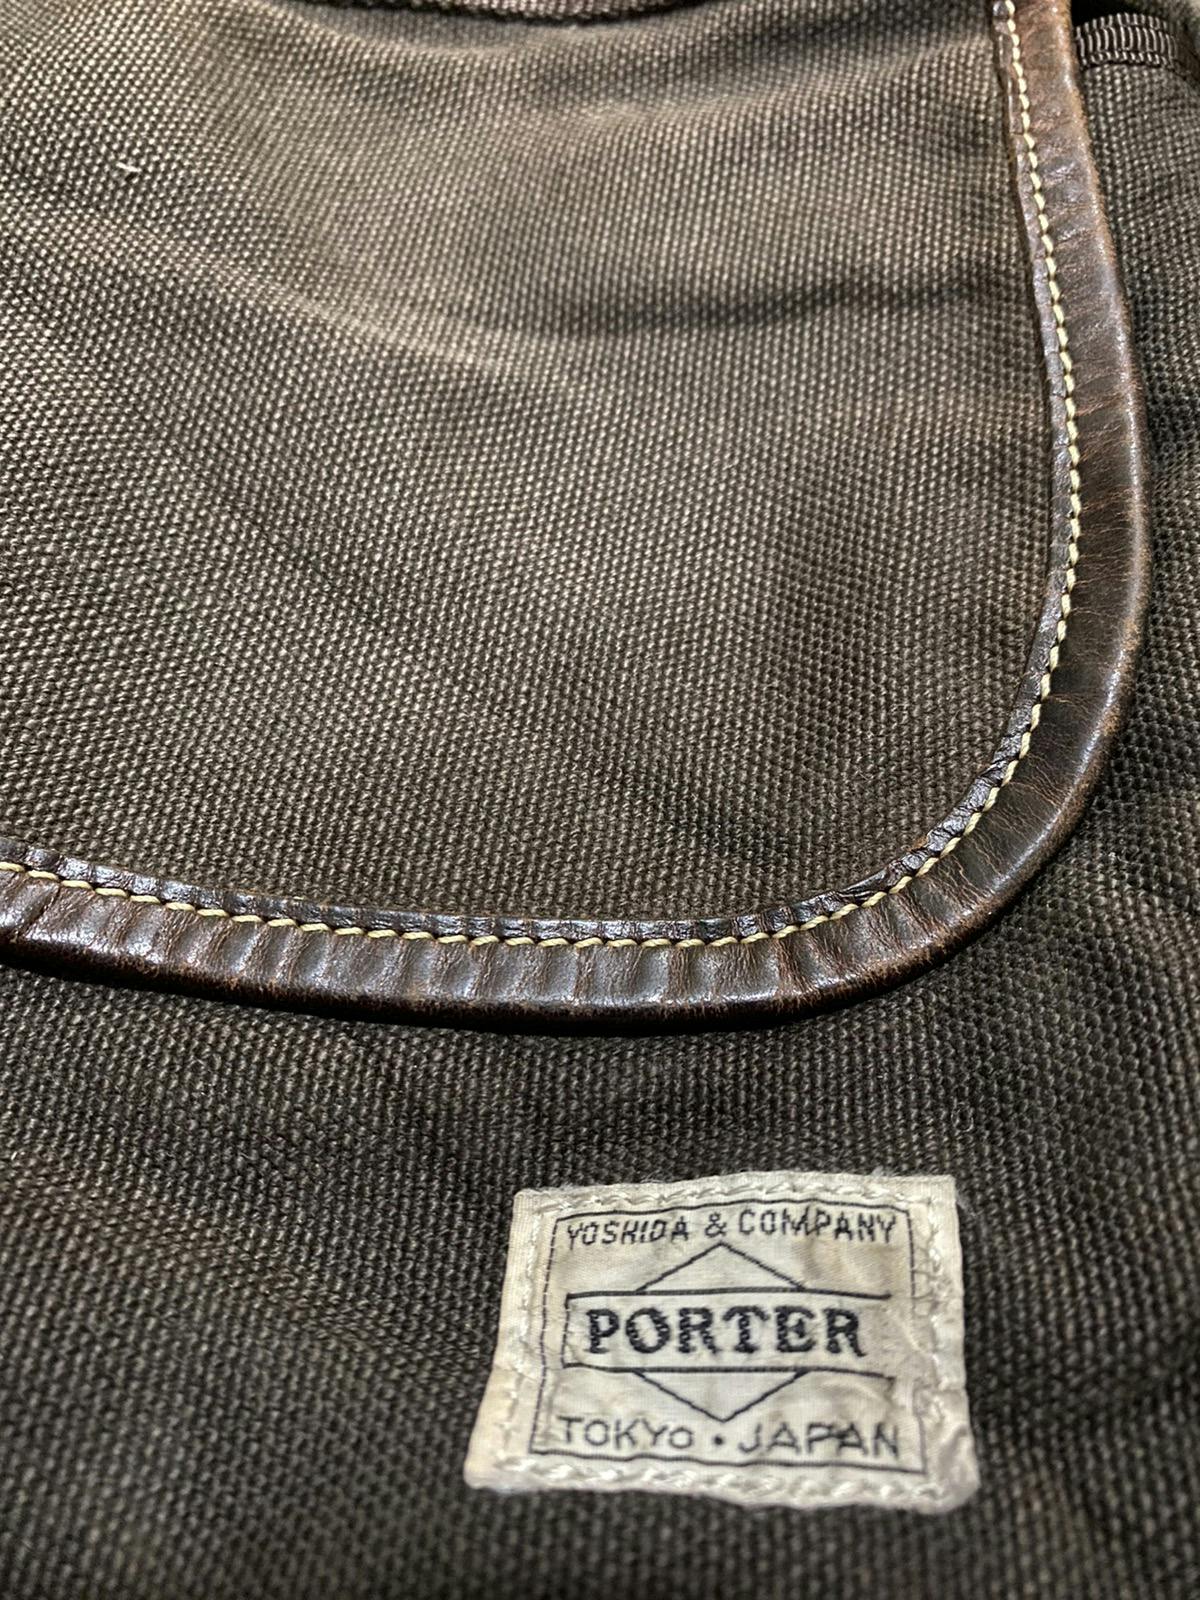 Vintage Sling bag PORTER X FABRICK MADE IN JAPAN - 3